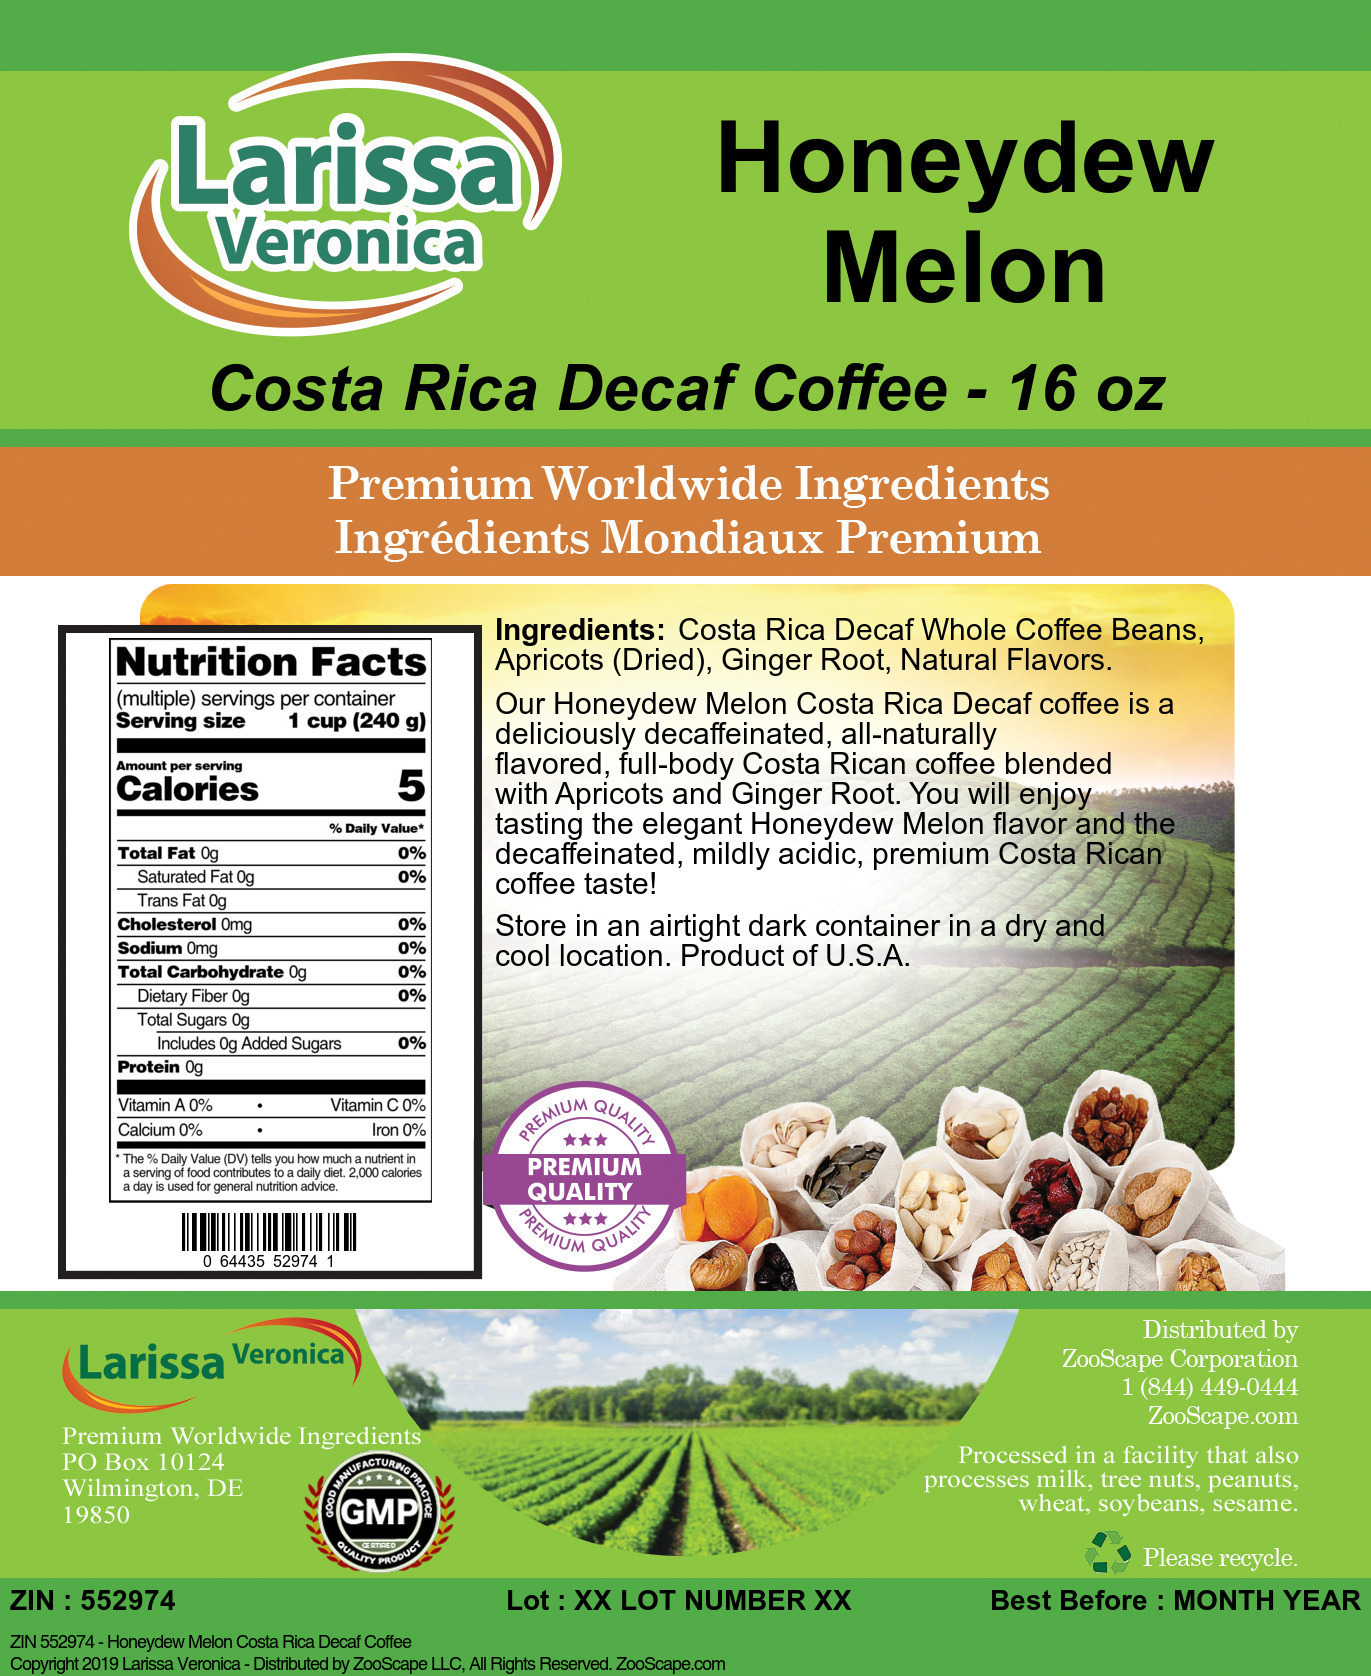 Honeydew Melon Costa Rica Decaf Coffee - Label